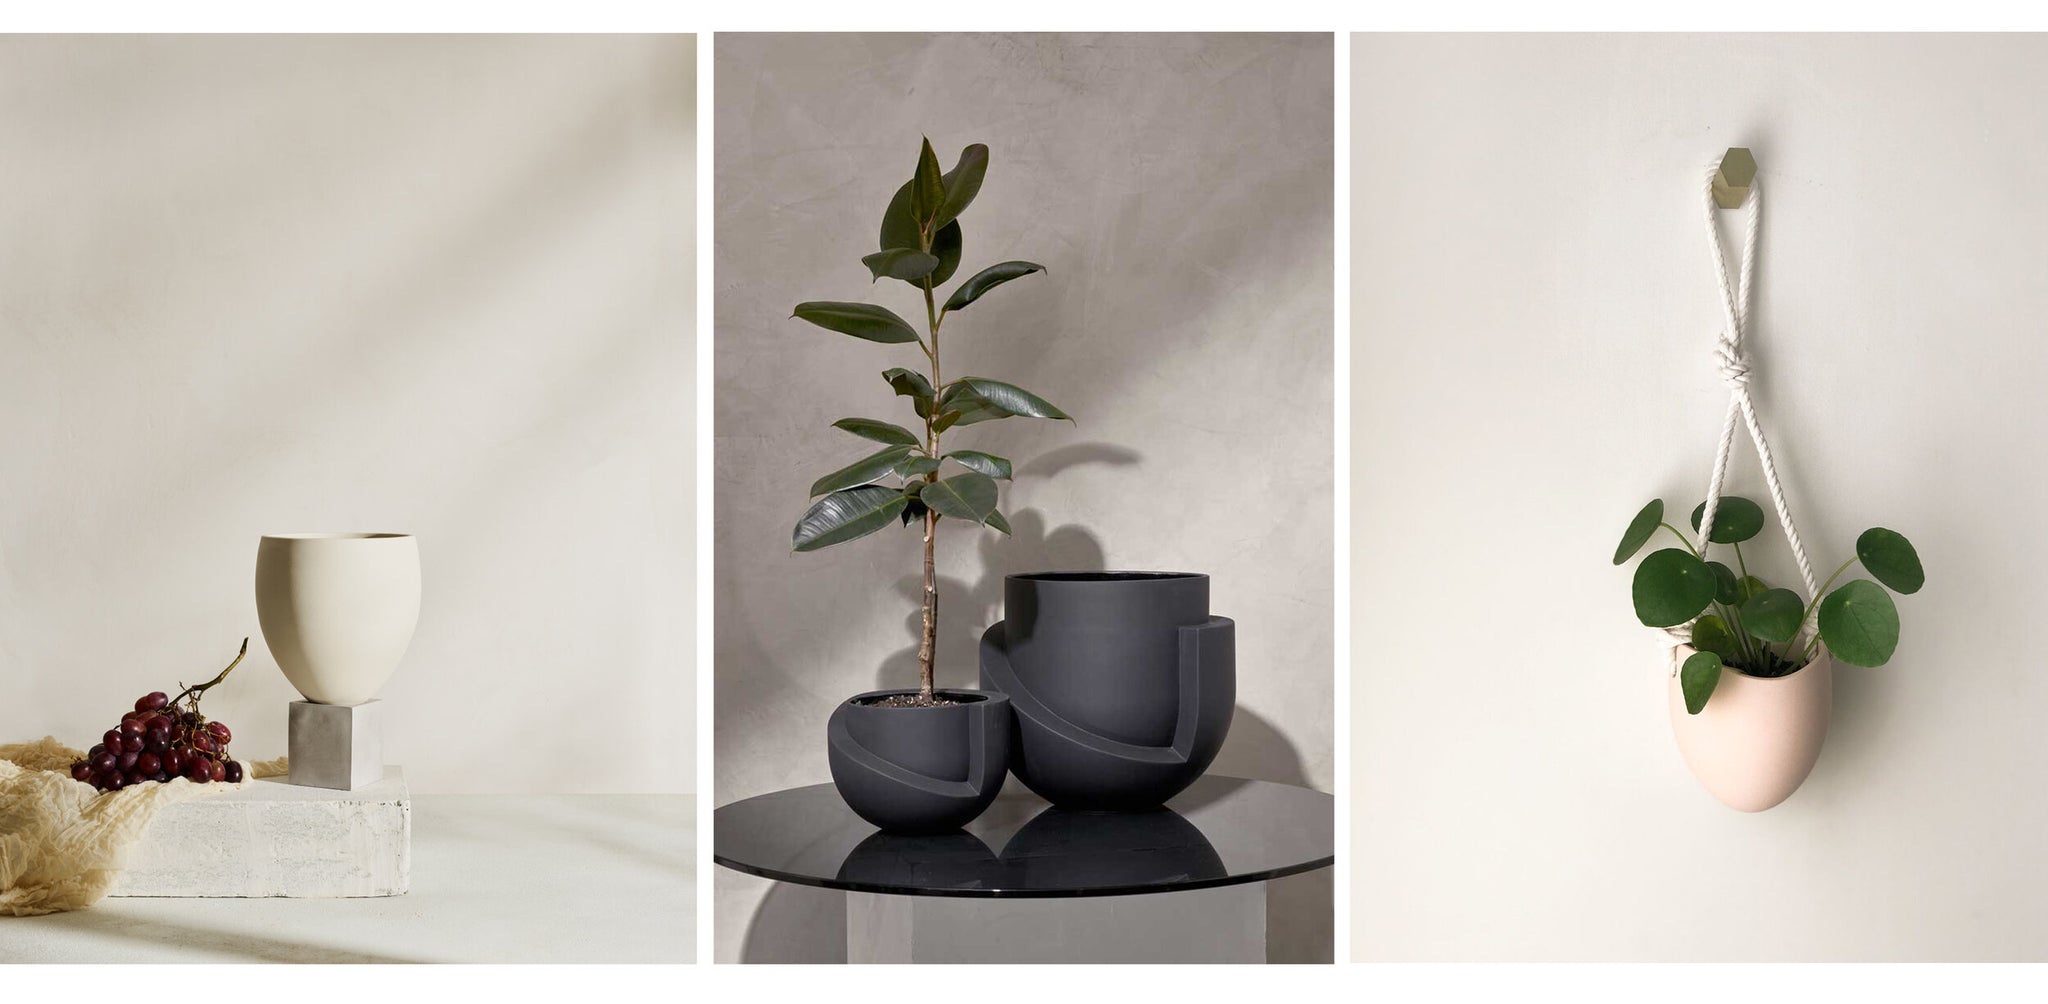 ELEVA porcelain and concrete planter,  VAYU ceramic planter,  SPORA ceramic planter with rope